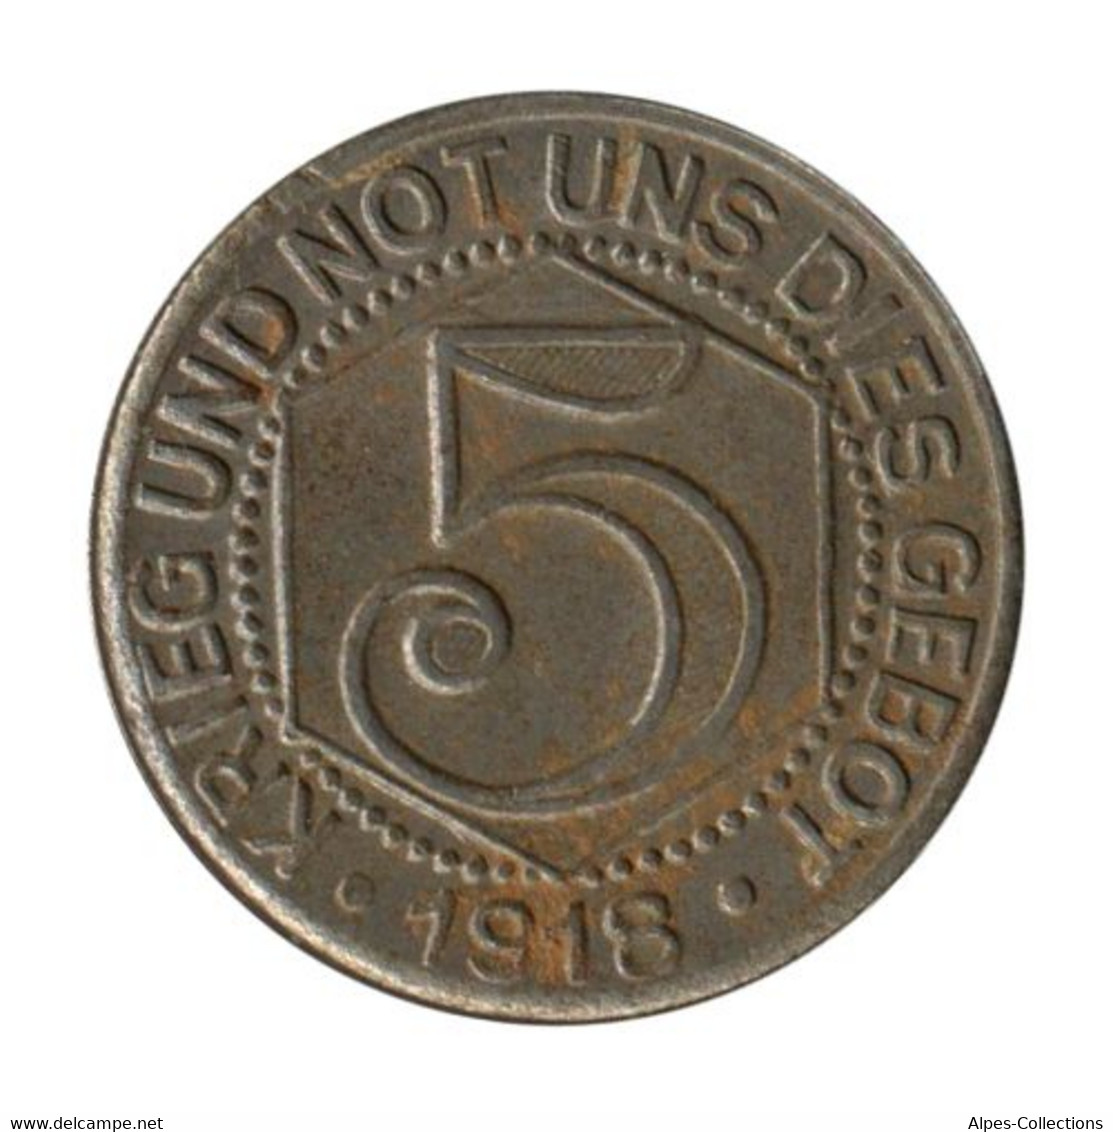 ALLEMAGNE - CALW - 05.1 - Monnaie De Nécessité - 5 Pfennig 1918 - Monétaires/De Nécessité